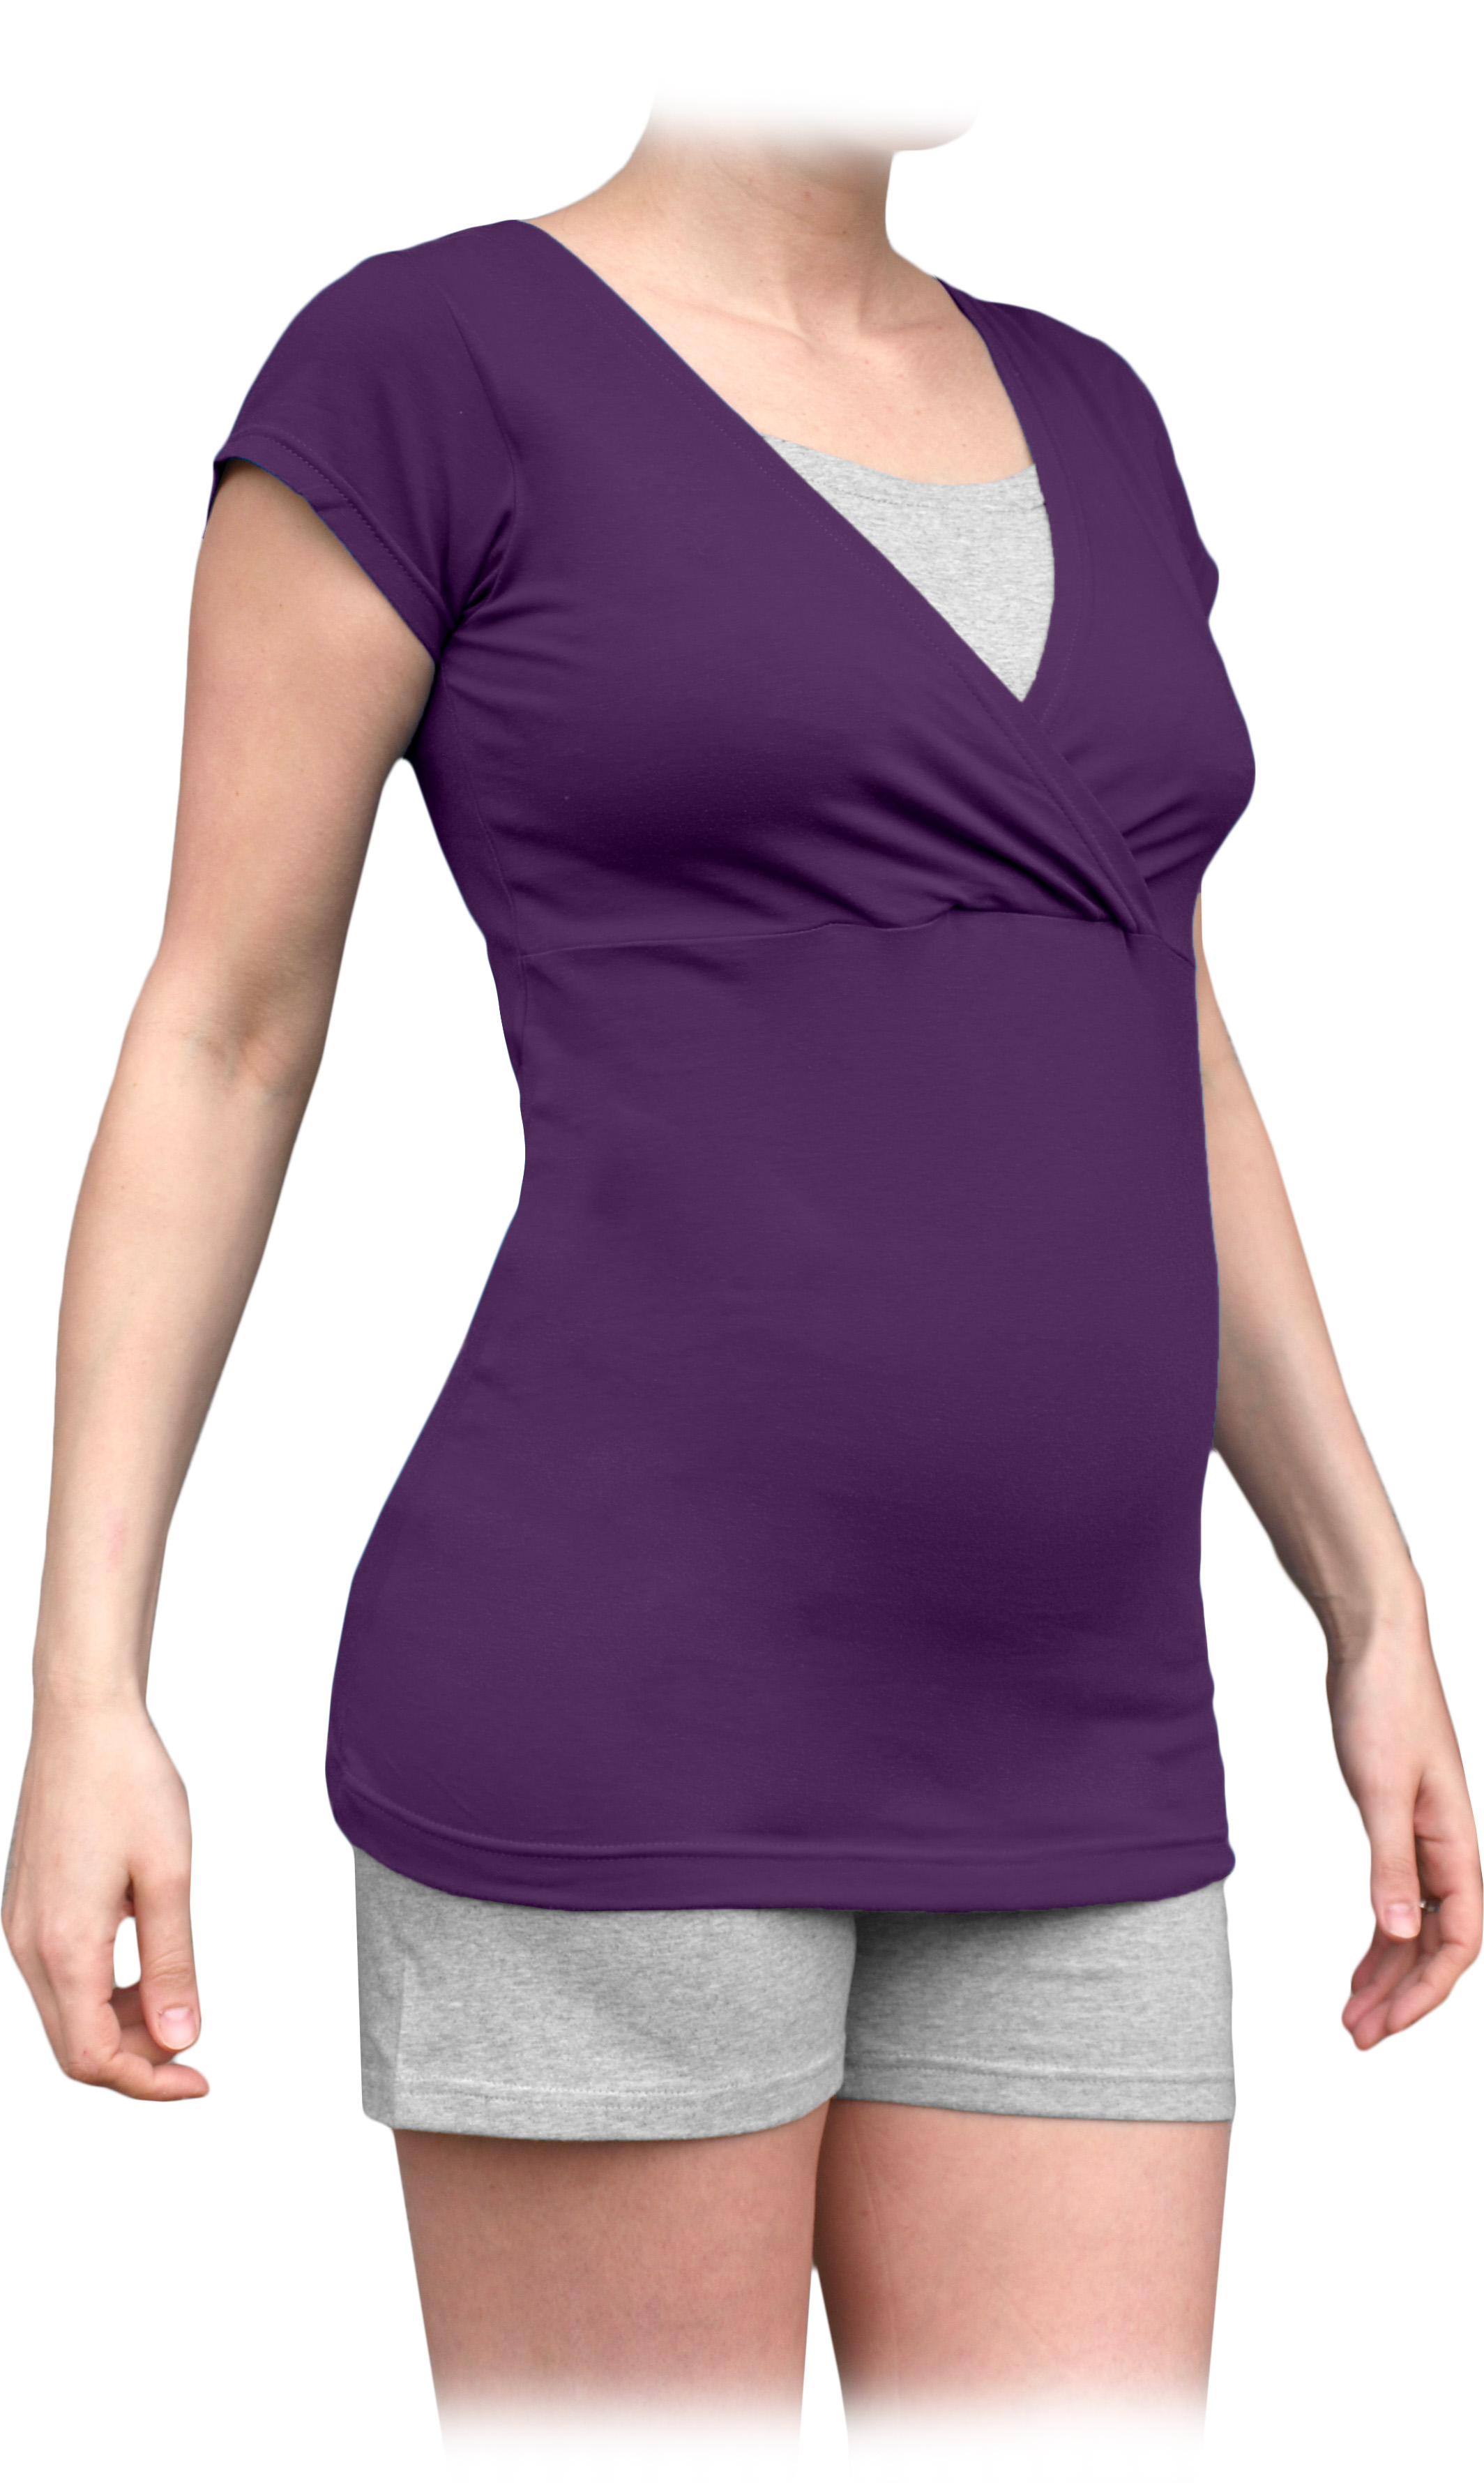 Tehotenské a dojčiace pyžamo, krátke, slivkovo fialové + sivý melír